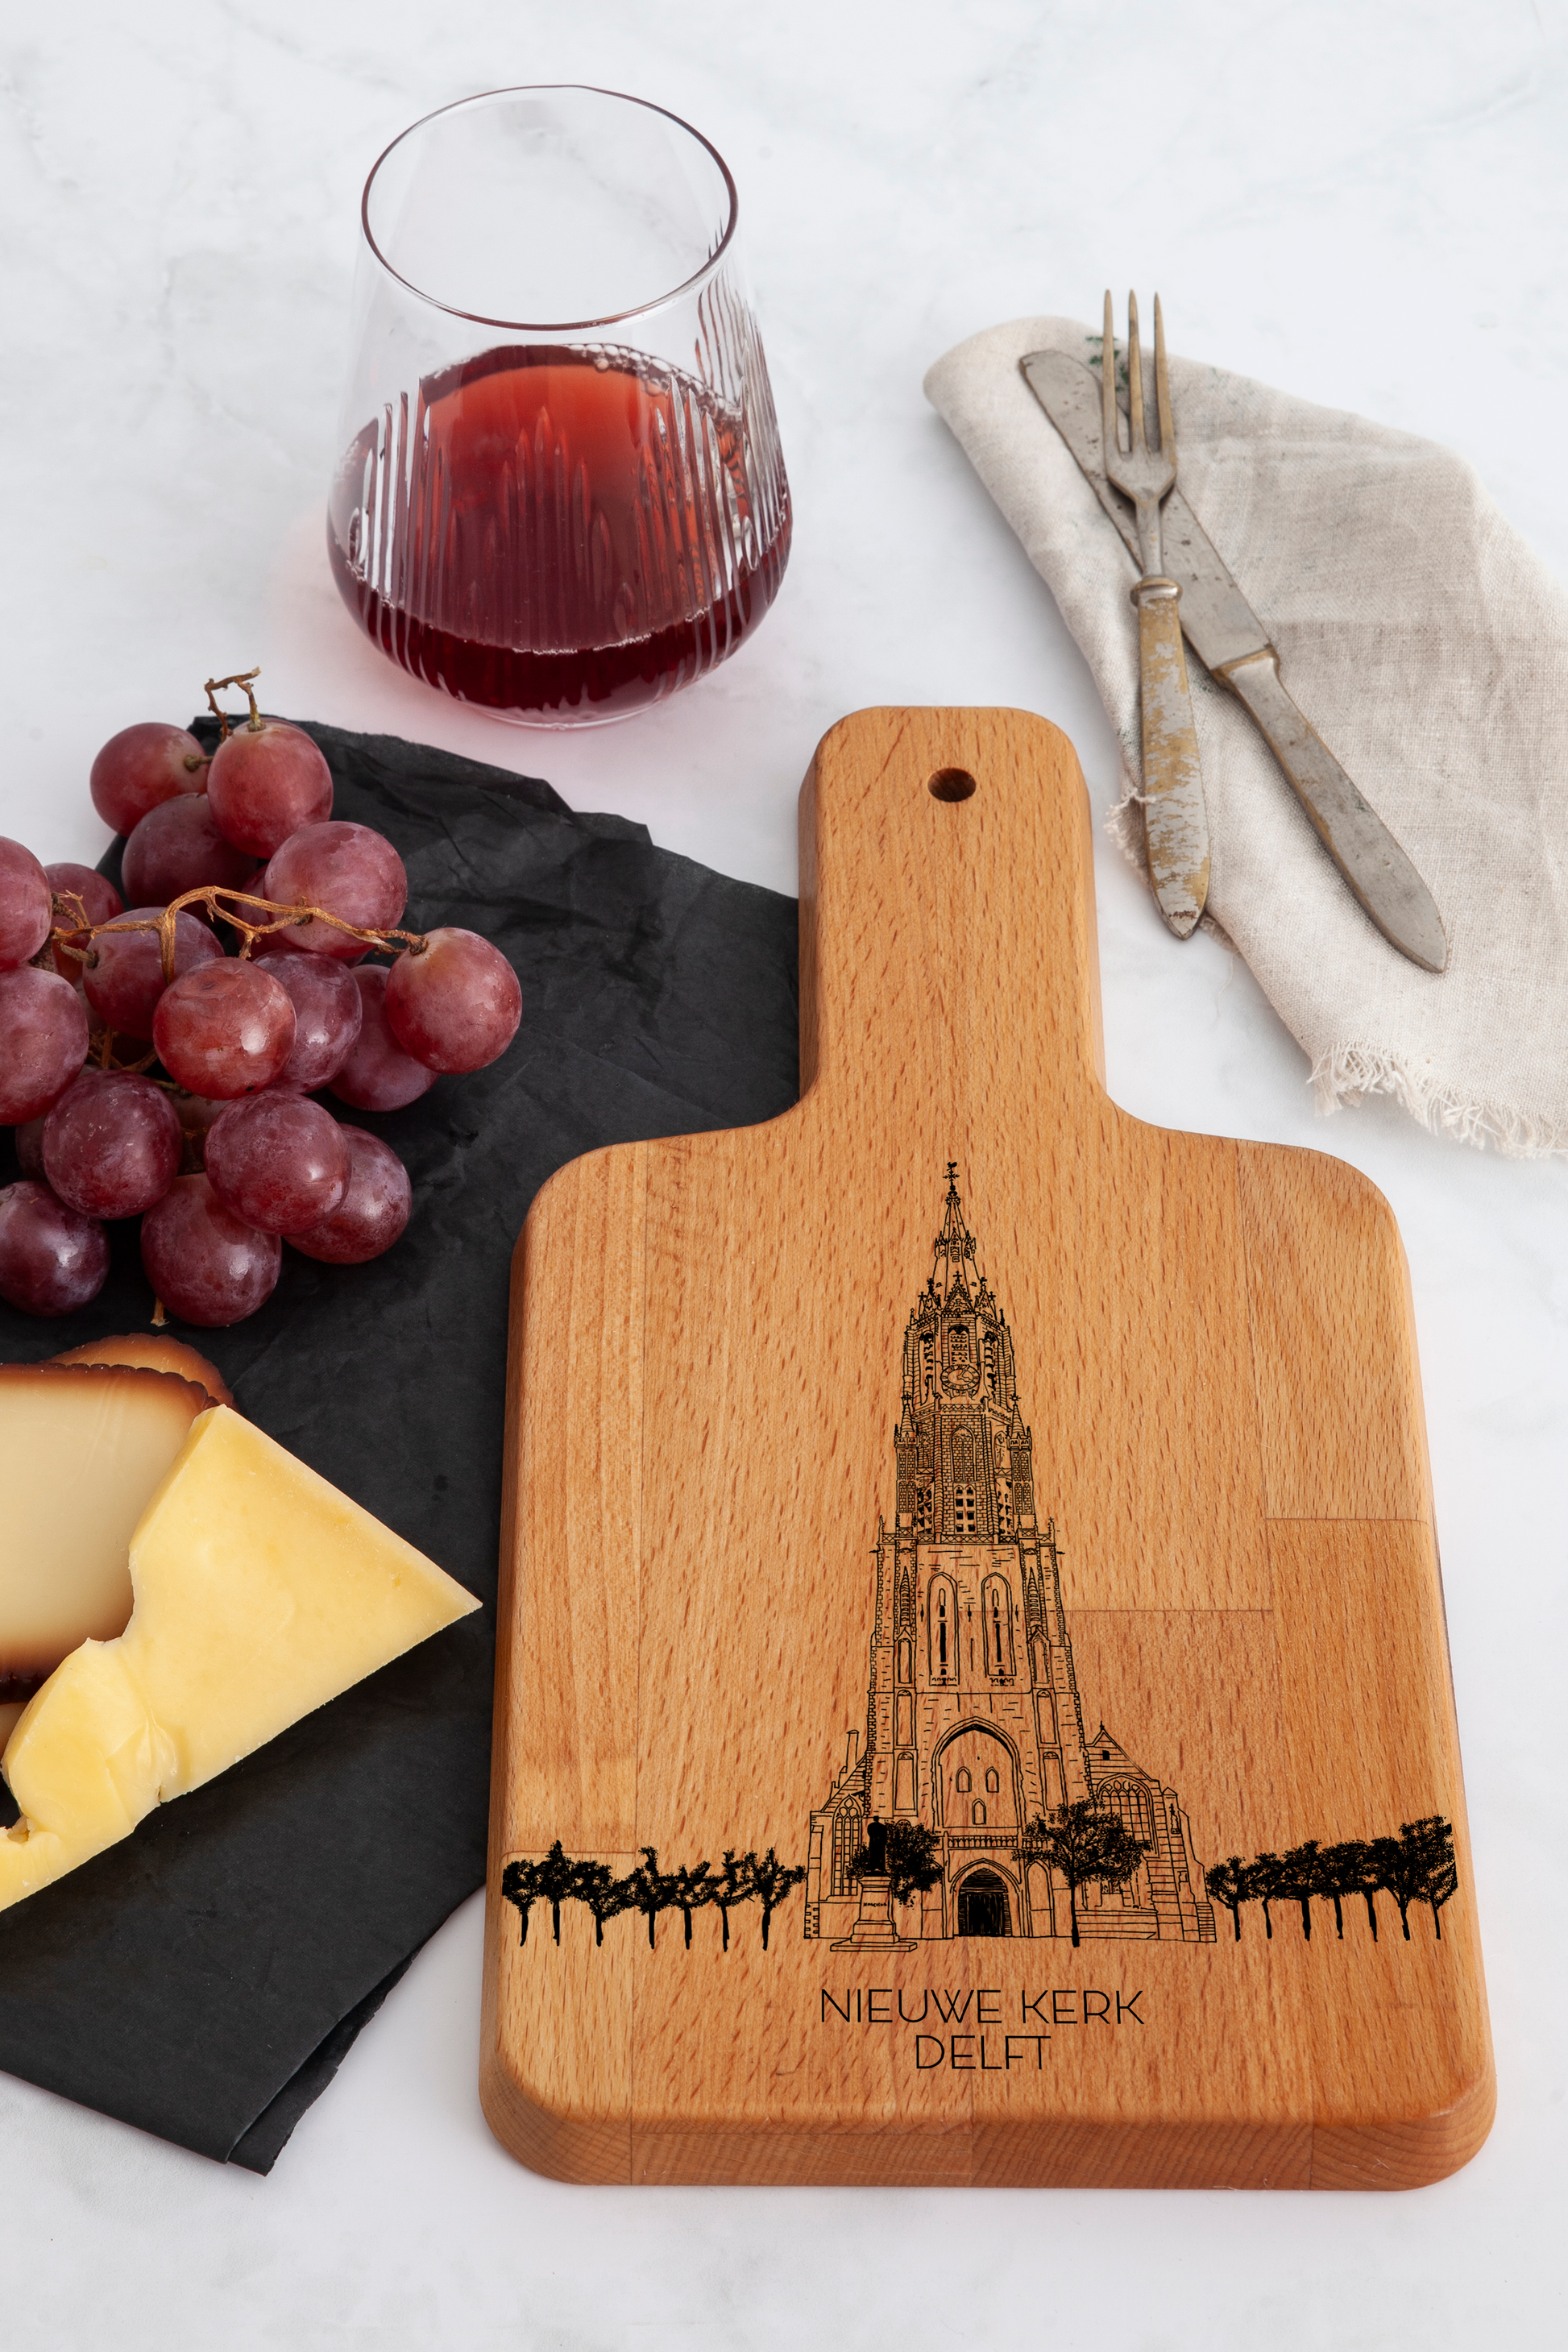 Delft, Nieuwe Kerk, cheese board, on countertop